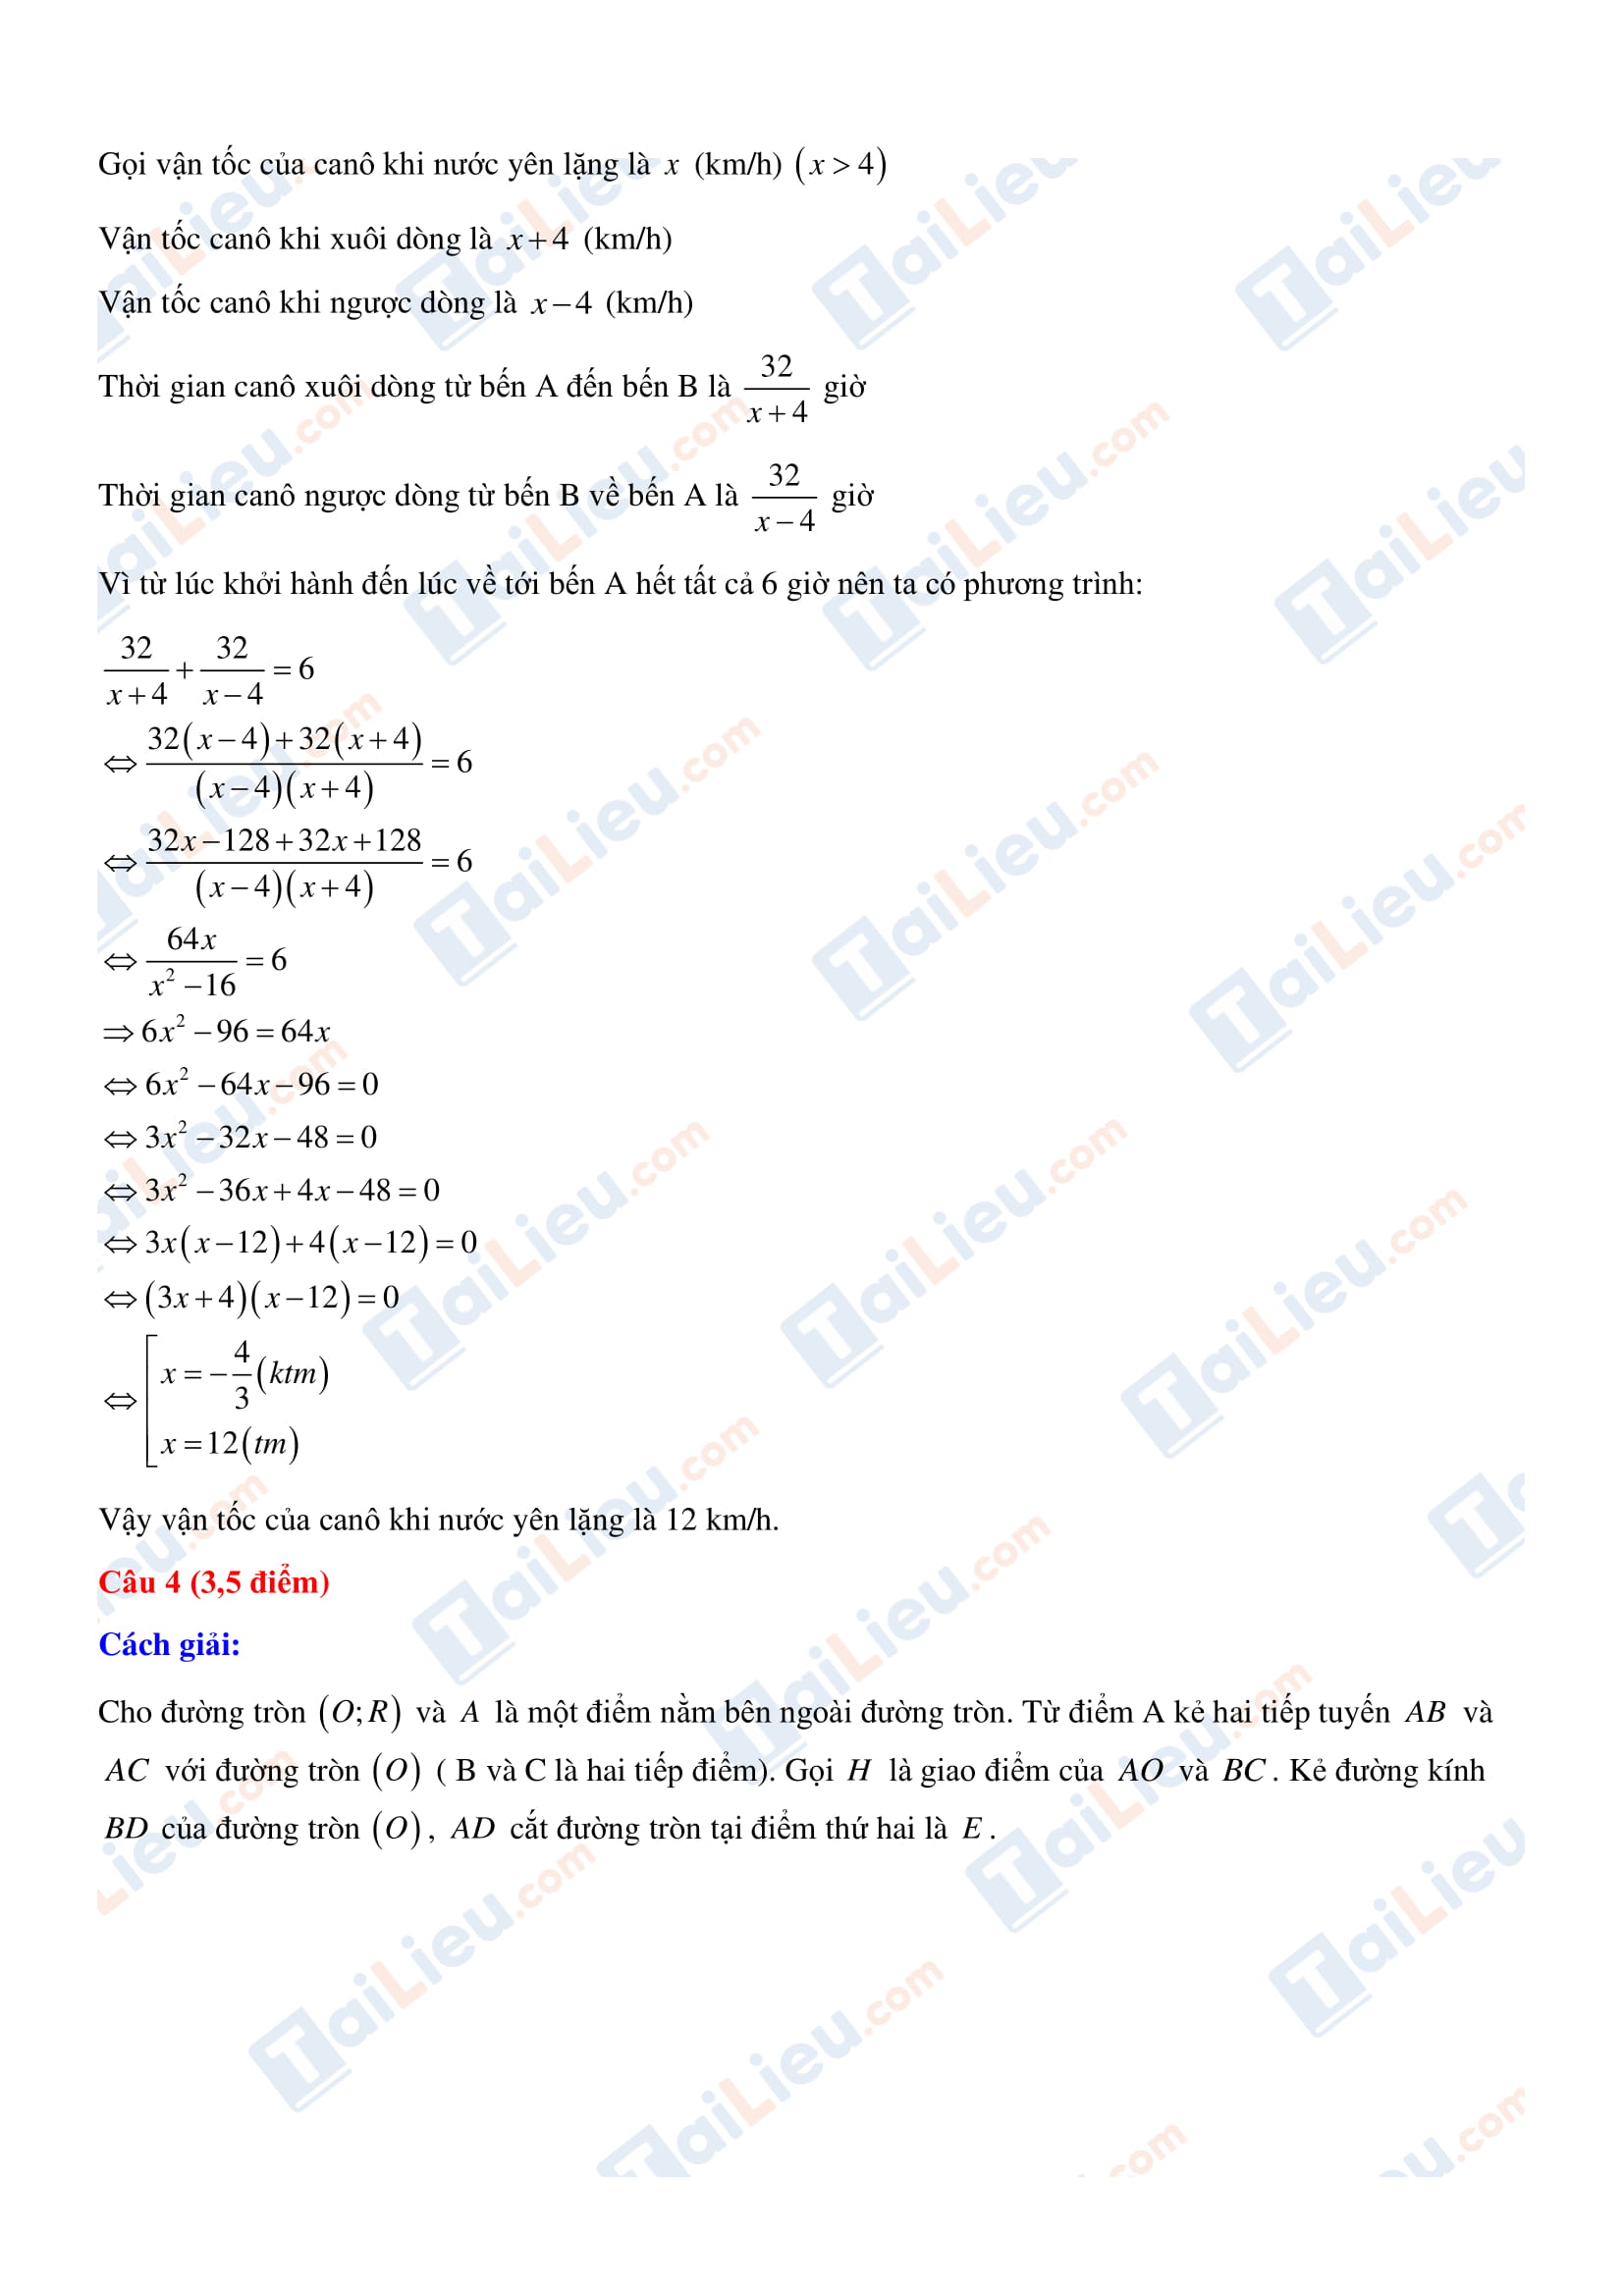 Đáp án đề thi tuyển sinh lớp 10 môn toán Quảng Ninh 2020-2021 (phần 3)